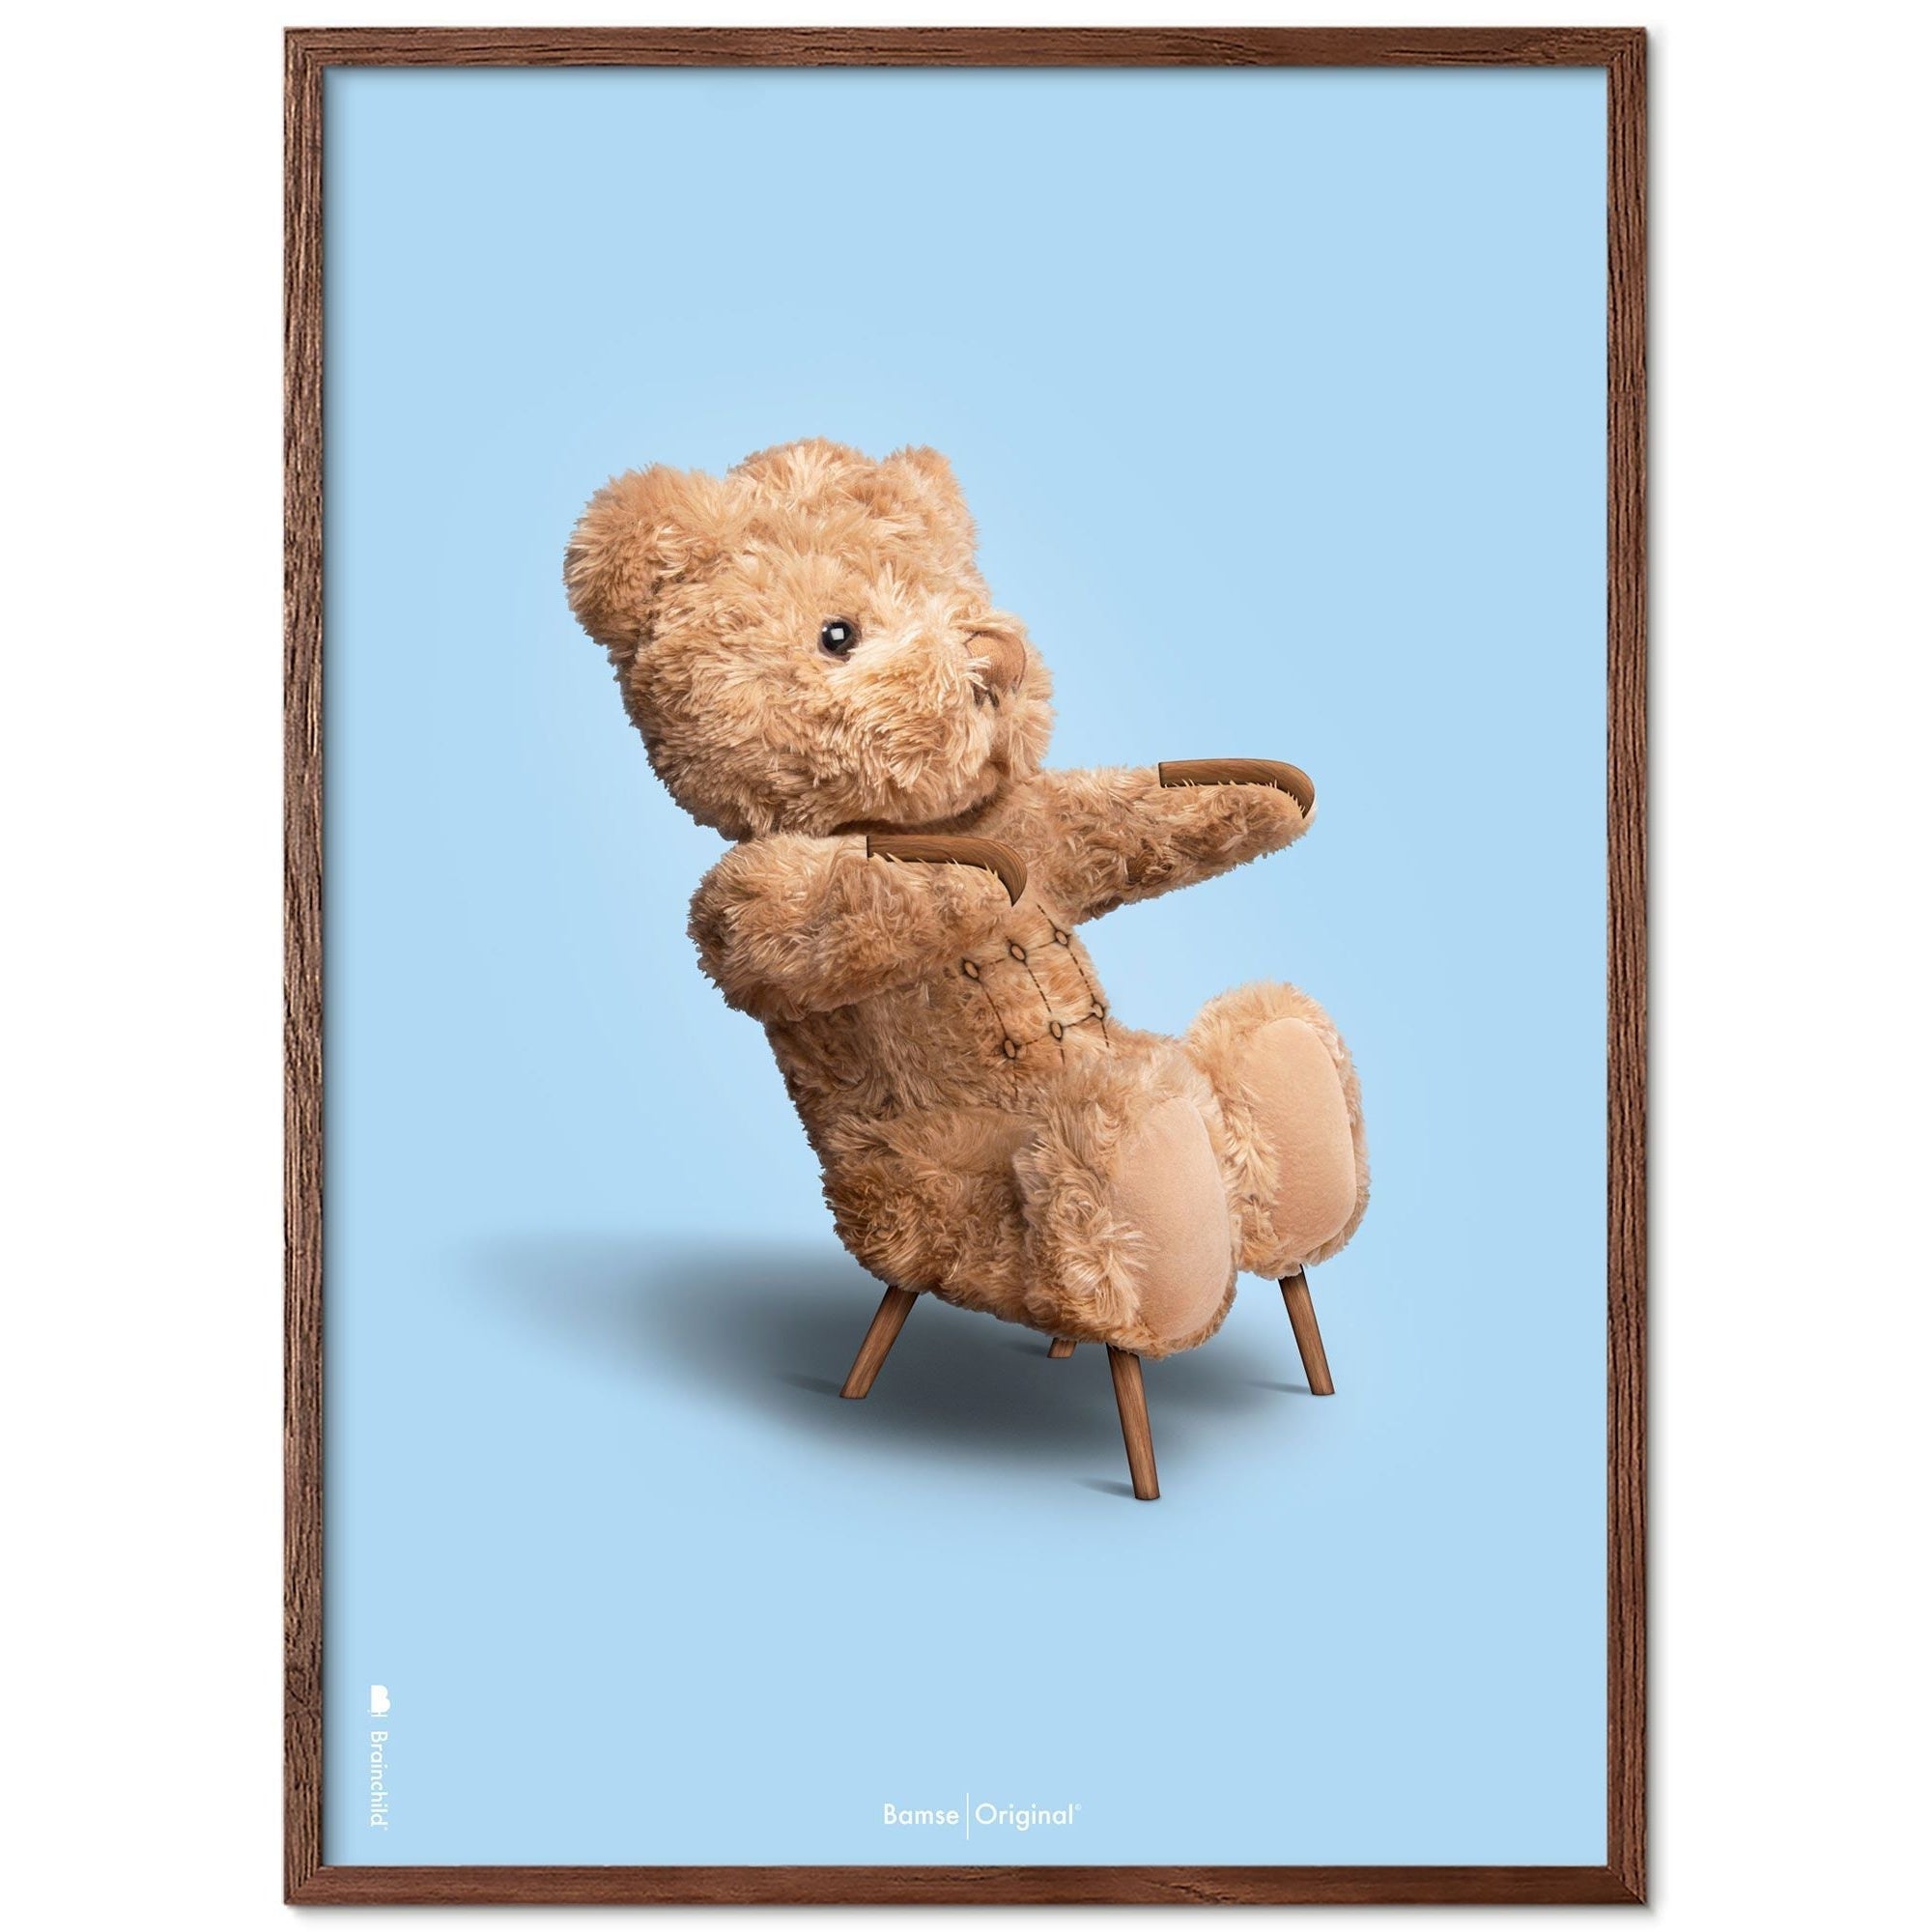 Marco de póster clásico de BrainChild Teddy Bear Hecho de madera oscura Ram 70x100 cm, fondo azul claro